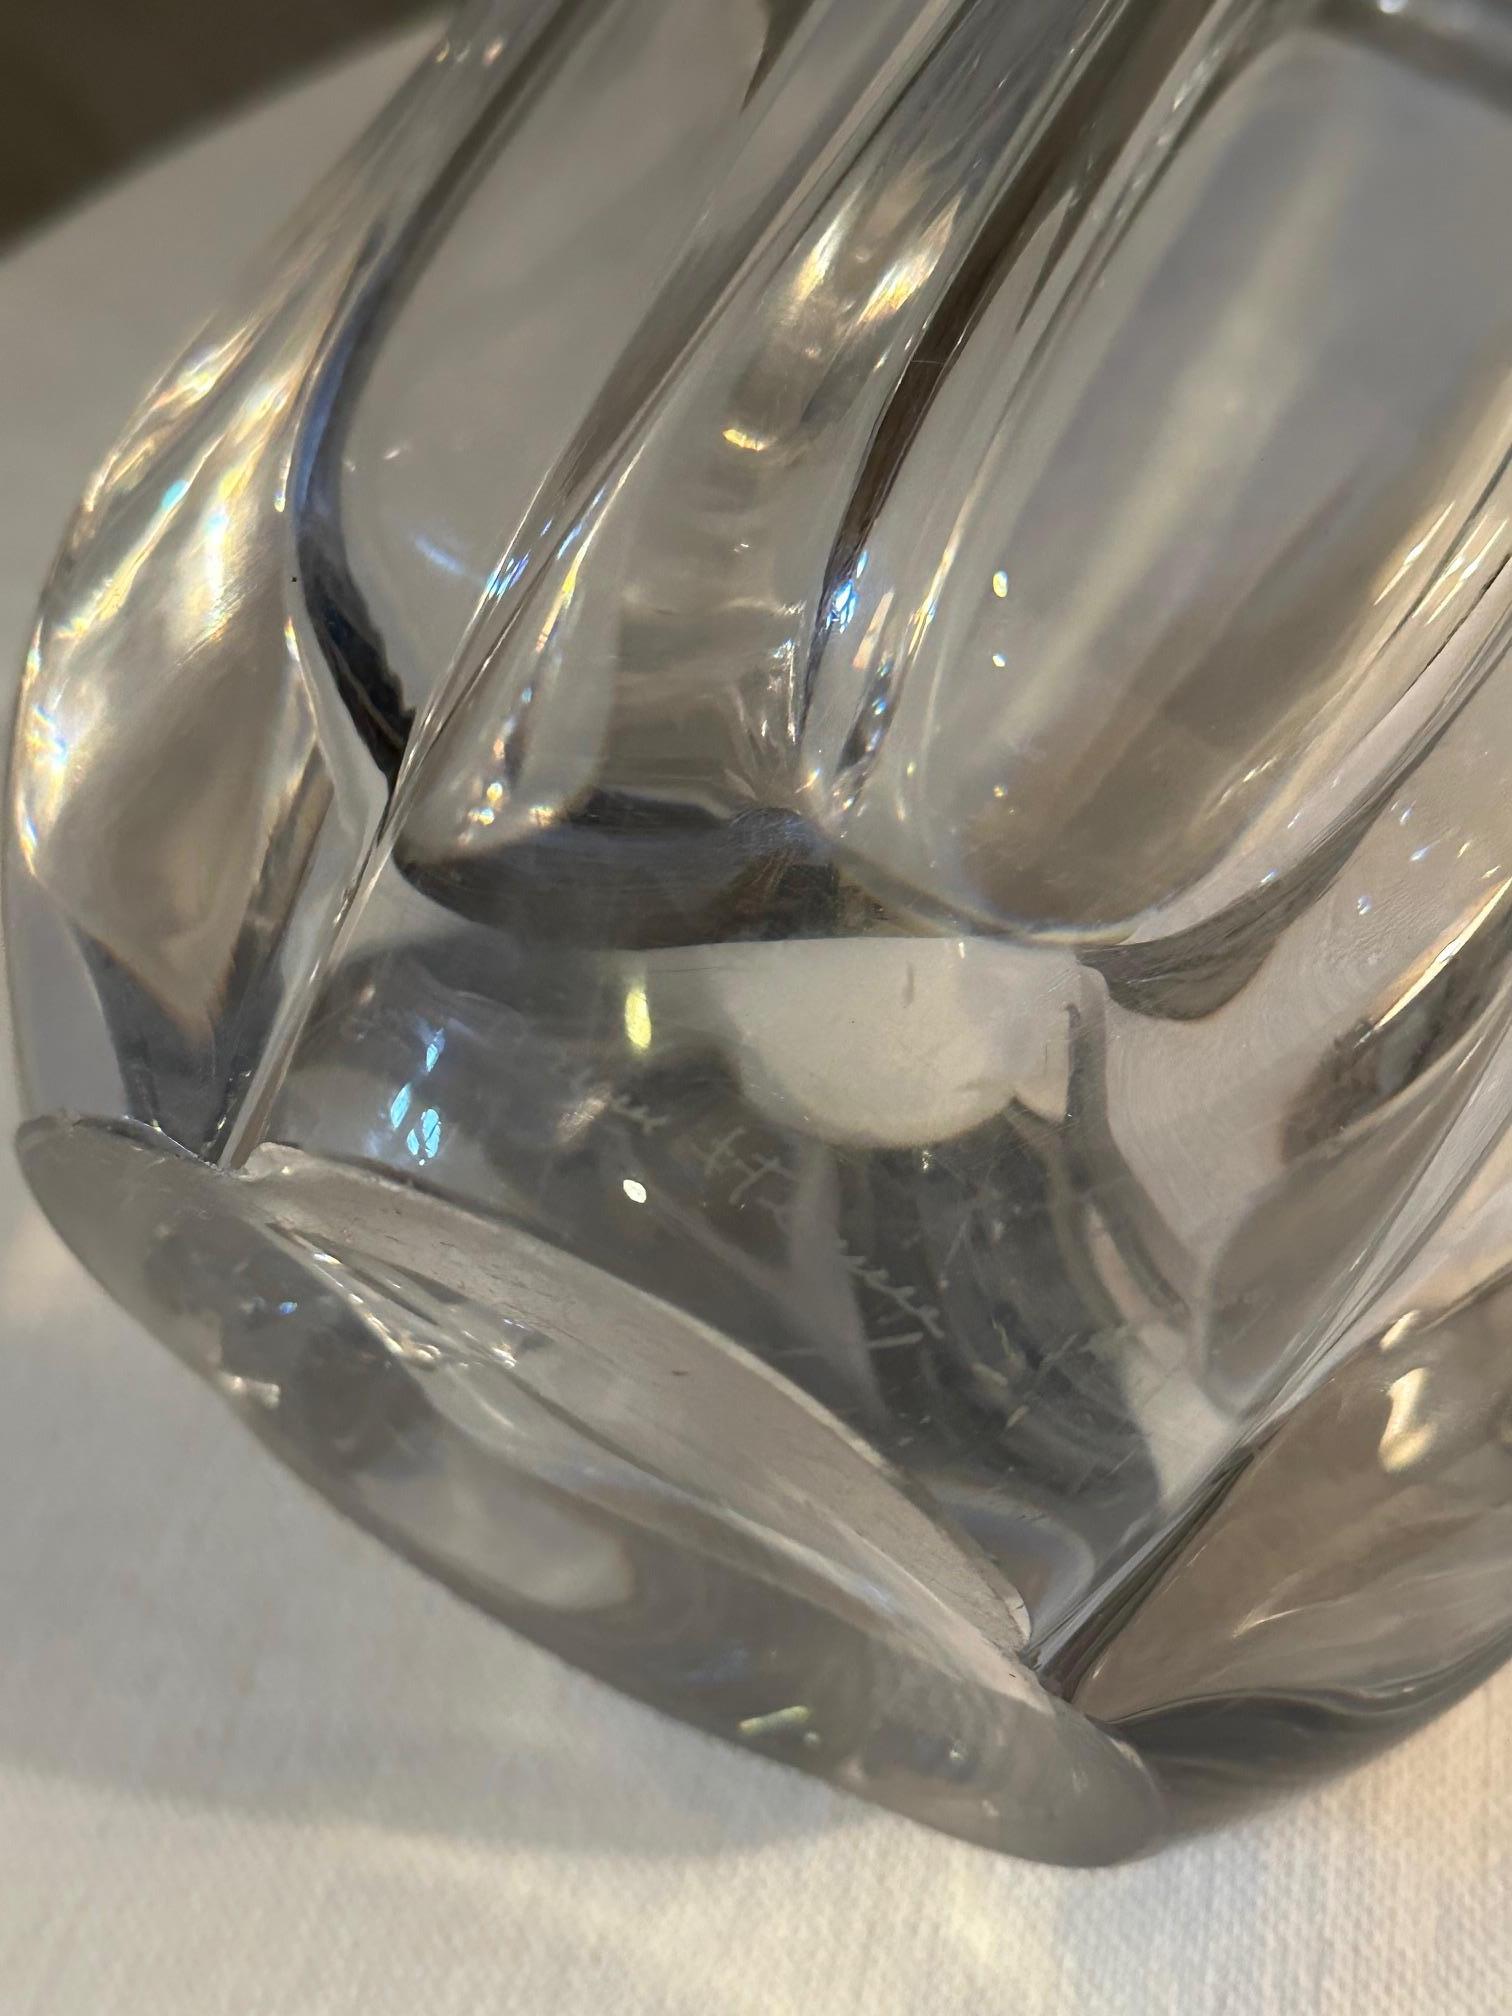 Große Daum Kristallvase aus den 60er Jahren in gutem Zustand, man sieht nur ein paar Kratzer. Schöne Form und beeindruckende Größe. 
Ideal für die Herstellung großer und schöner Sträuße.